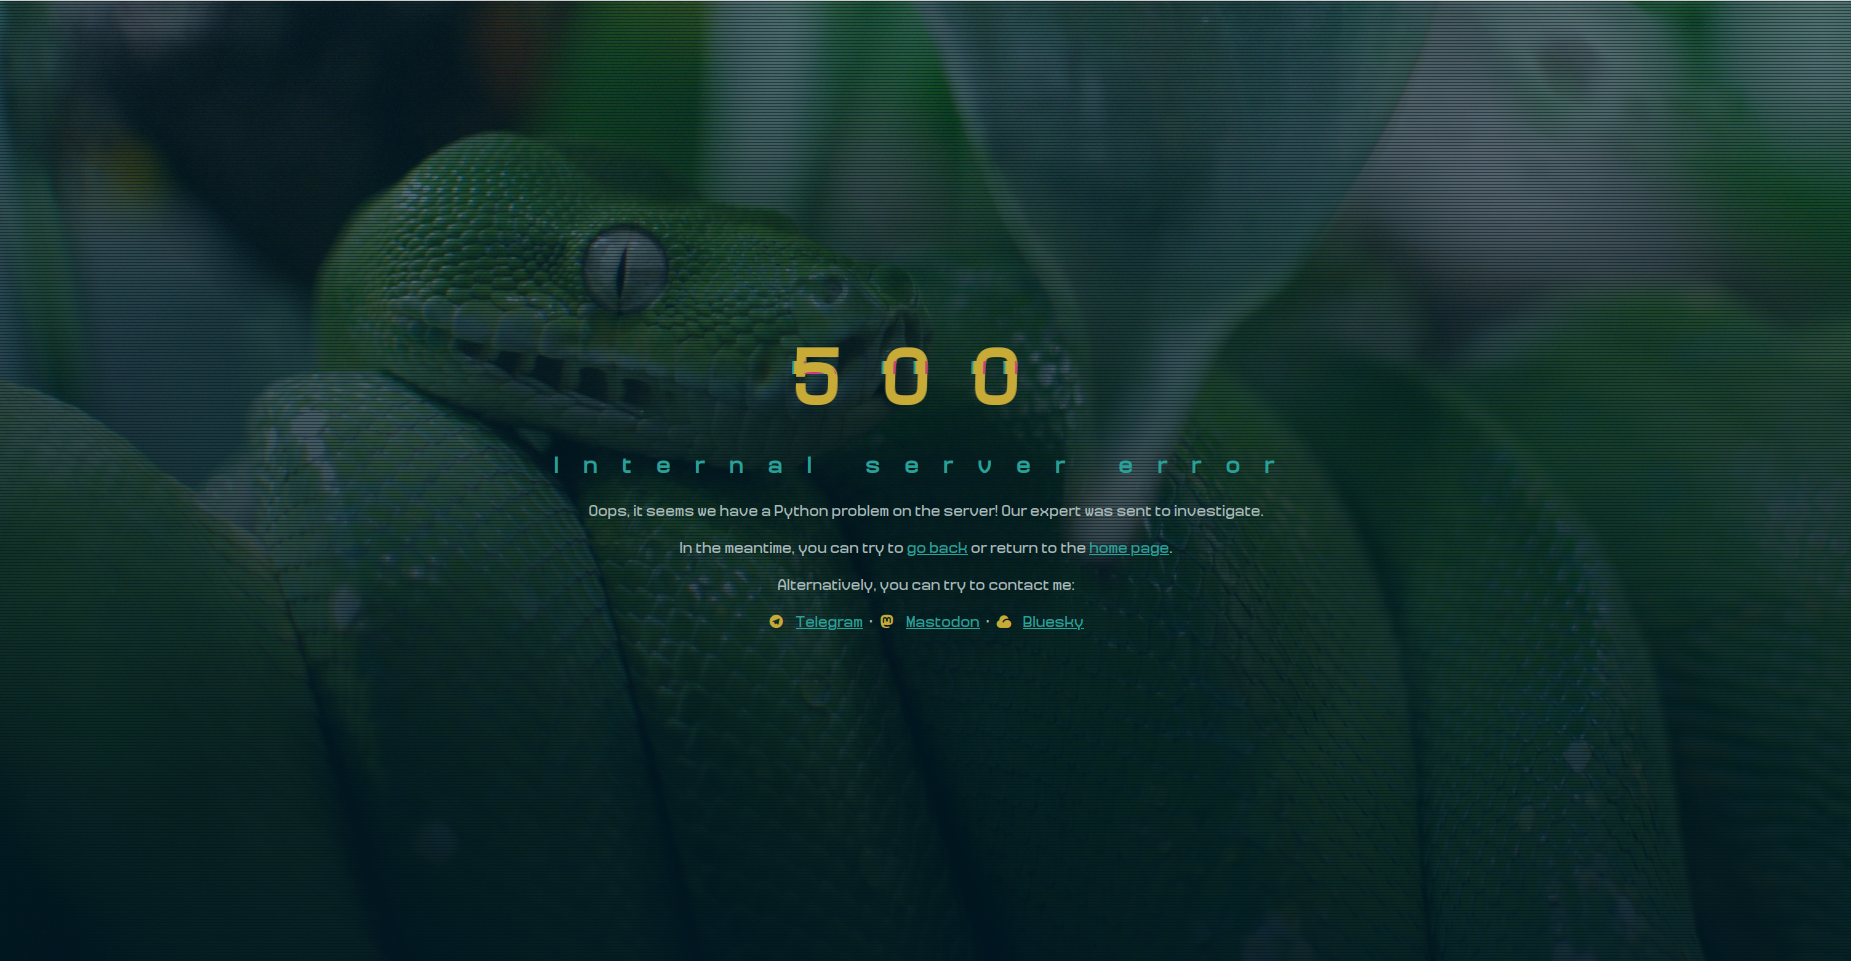 Capture d’écran montrant un "500" en gros caractères jaunes, suivi d’un texte indiquand qu’il s’agit d’une erreur au niveau du code Python du site. Une photo d’un python vert, assombrie et entrelacée de lignes sombres, est présente en fond d’écran.